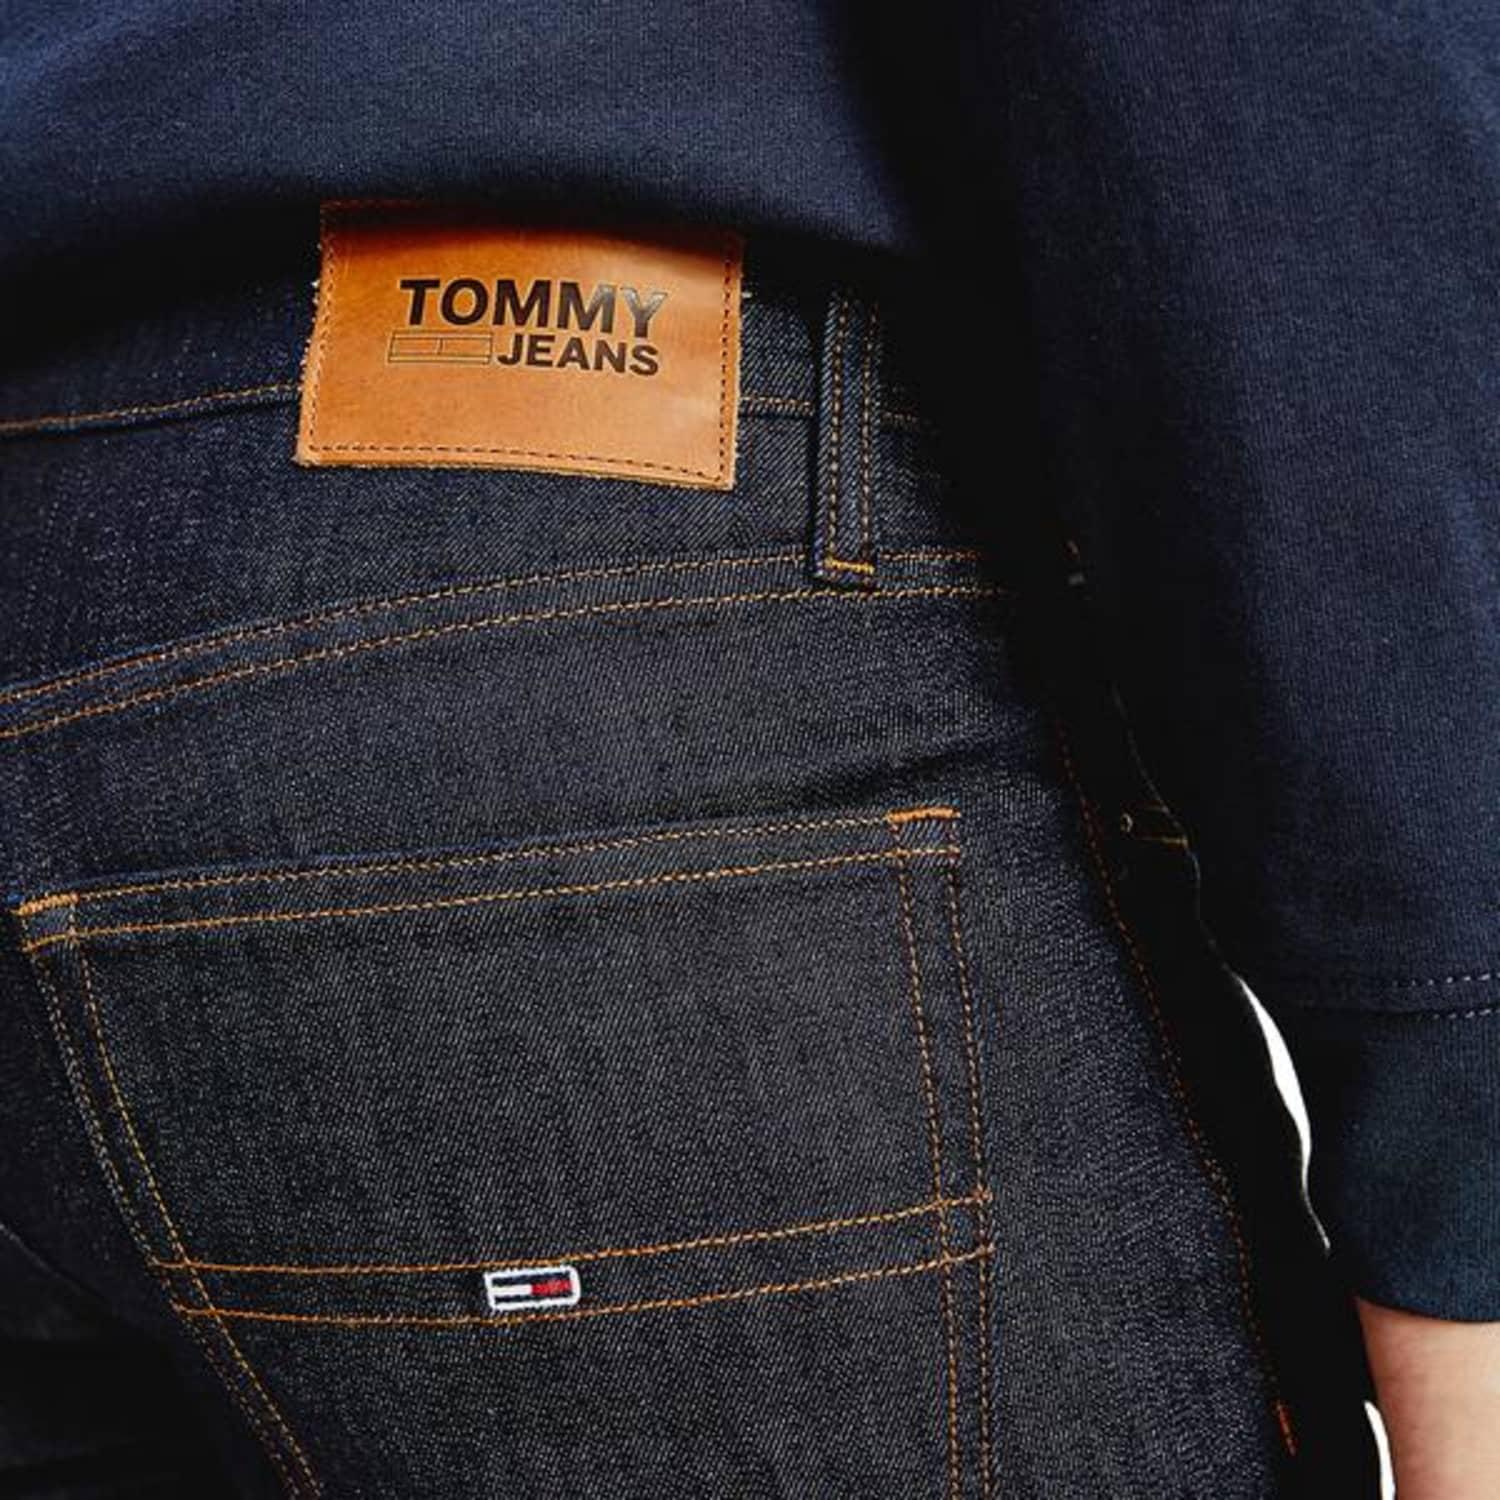 Tommy Hilfiger Denim Tommy Jeans Scanton Slim Jeans Rinse Comfort in Blue  for Men - Save 43% | Lyst